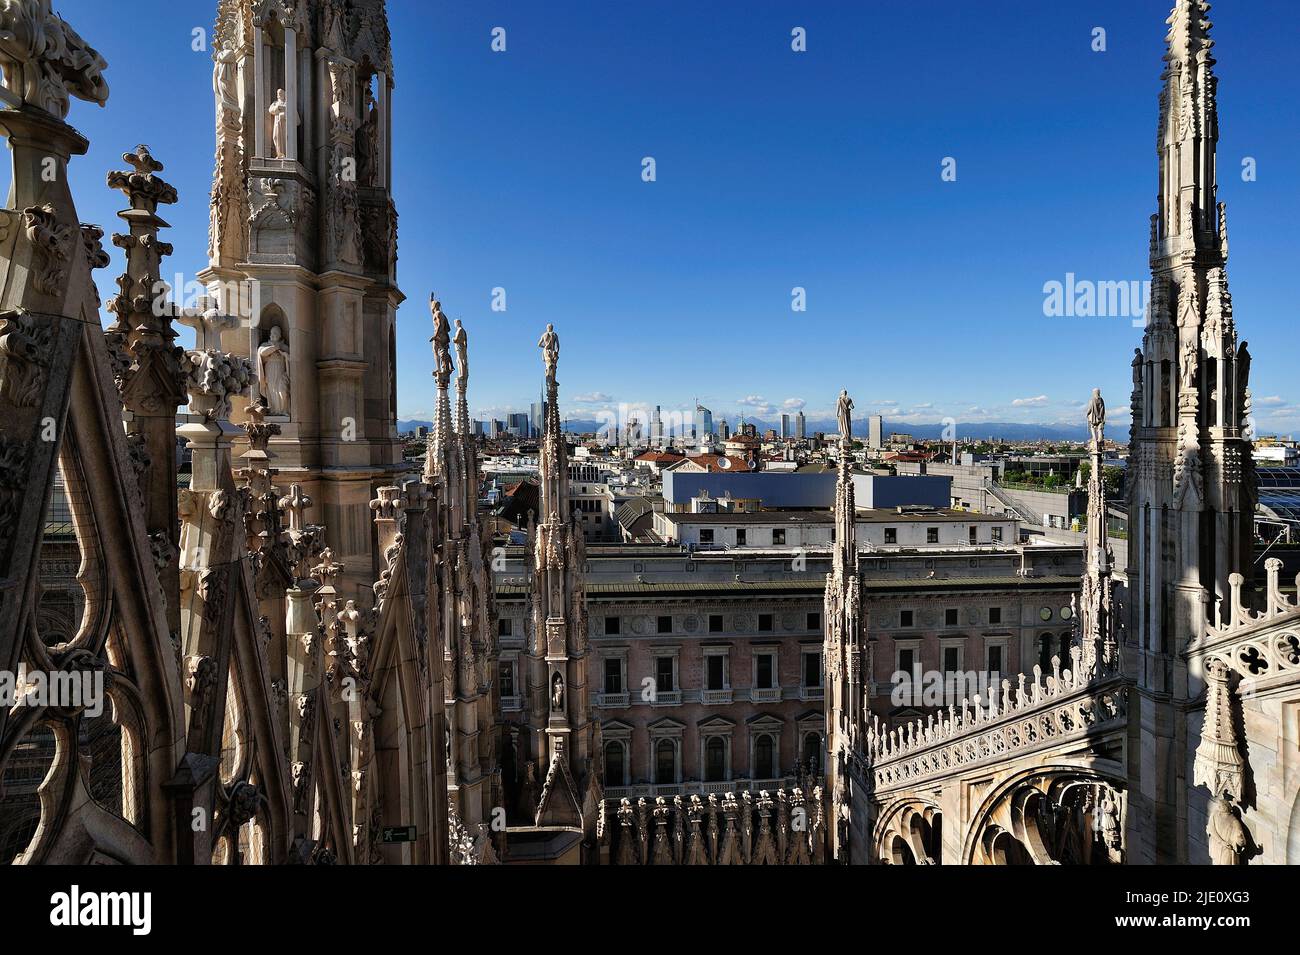 Milán, vista desde las terrazas del Duomo. Foto de stock